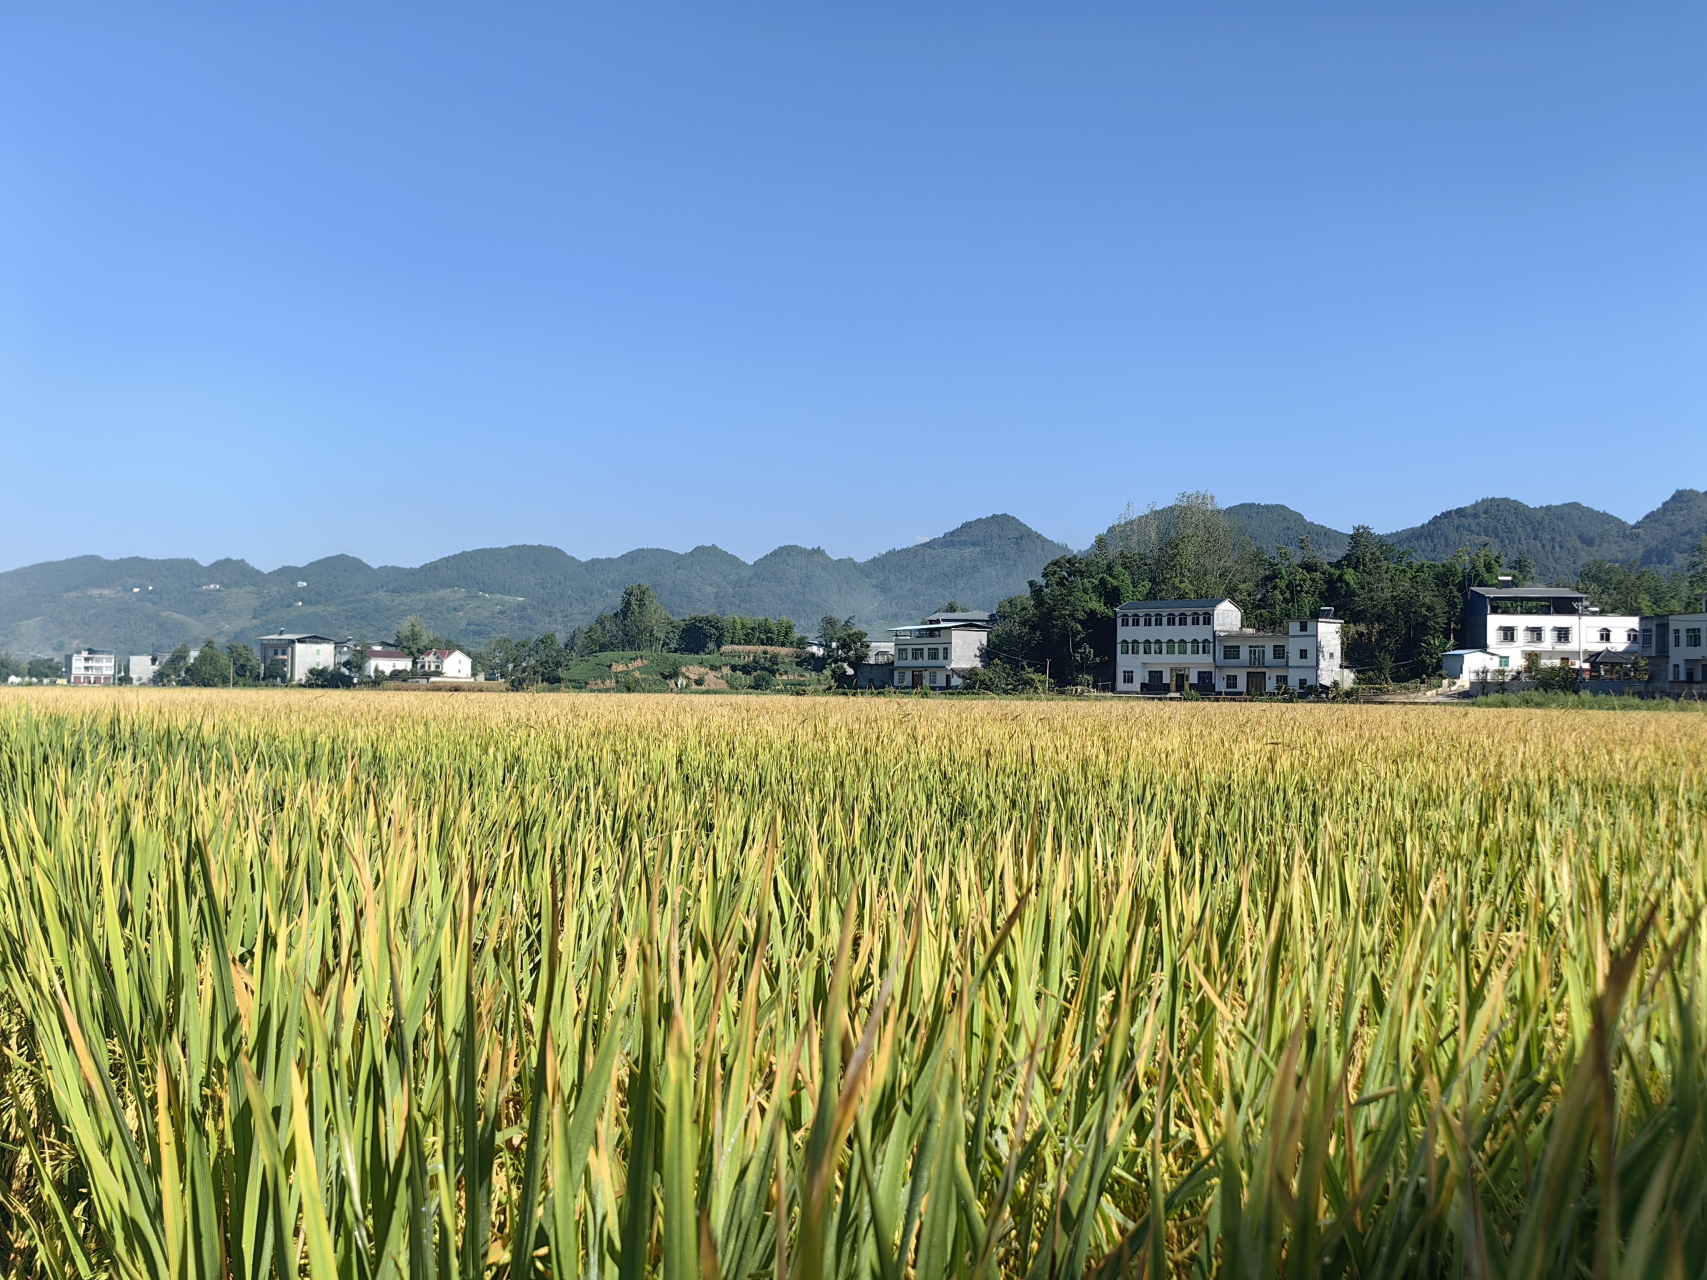 金黄的稻田景色图片